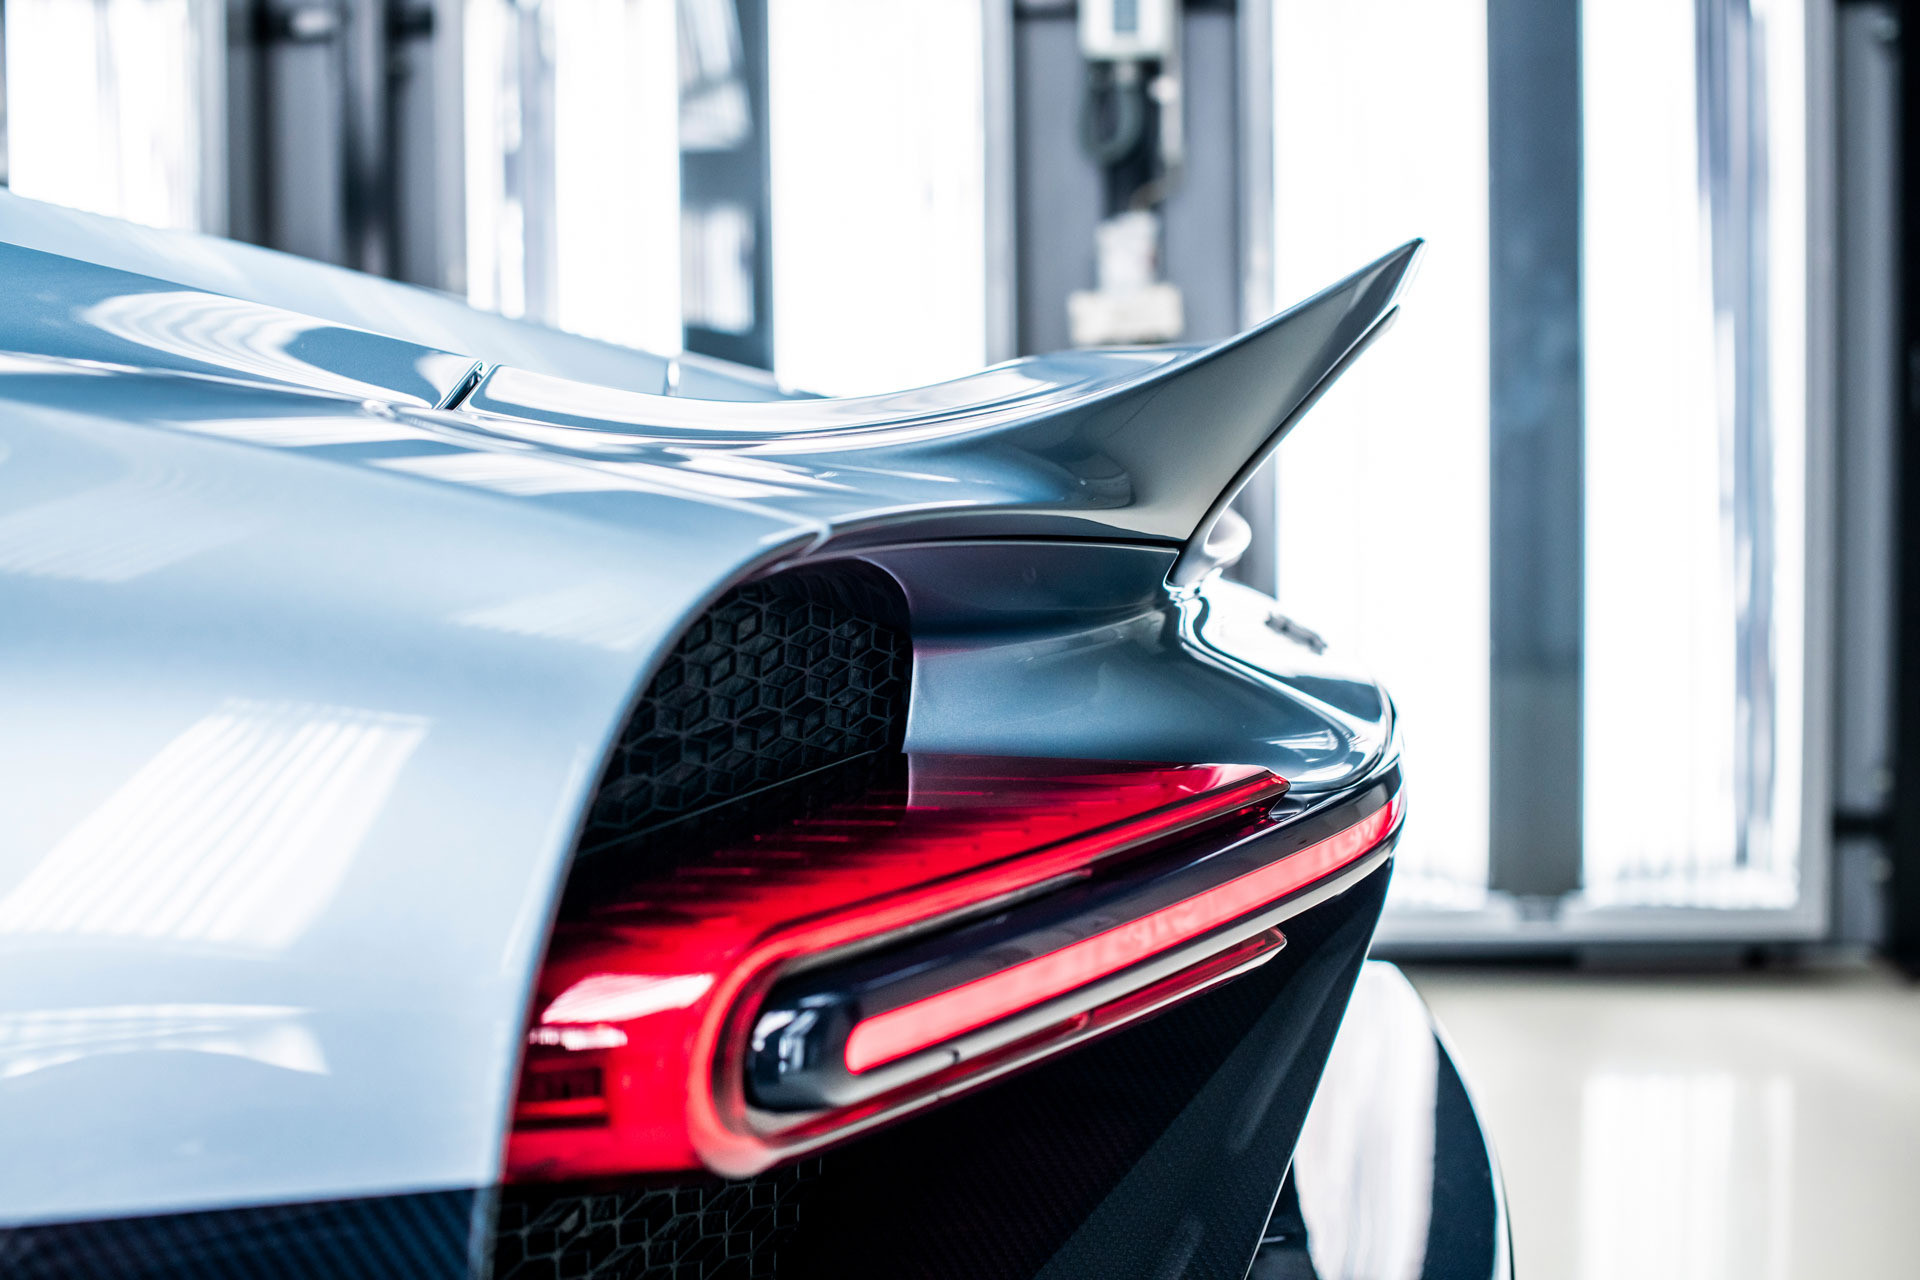 2022 Bugatti Chiron Profilée Tail Light Wallpapers #38 of 54